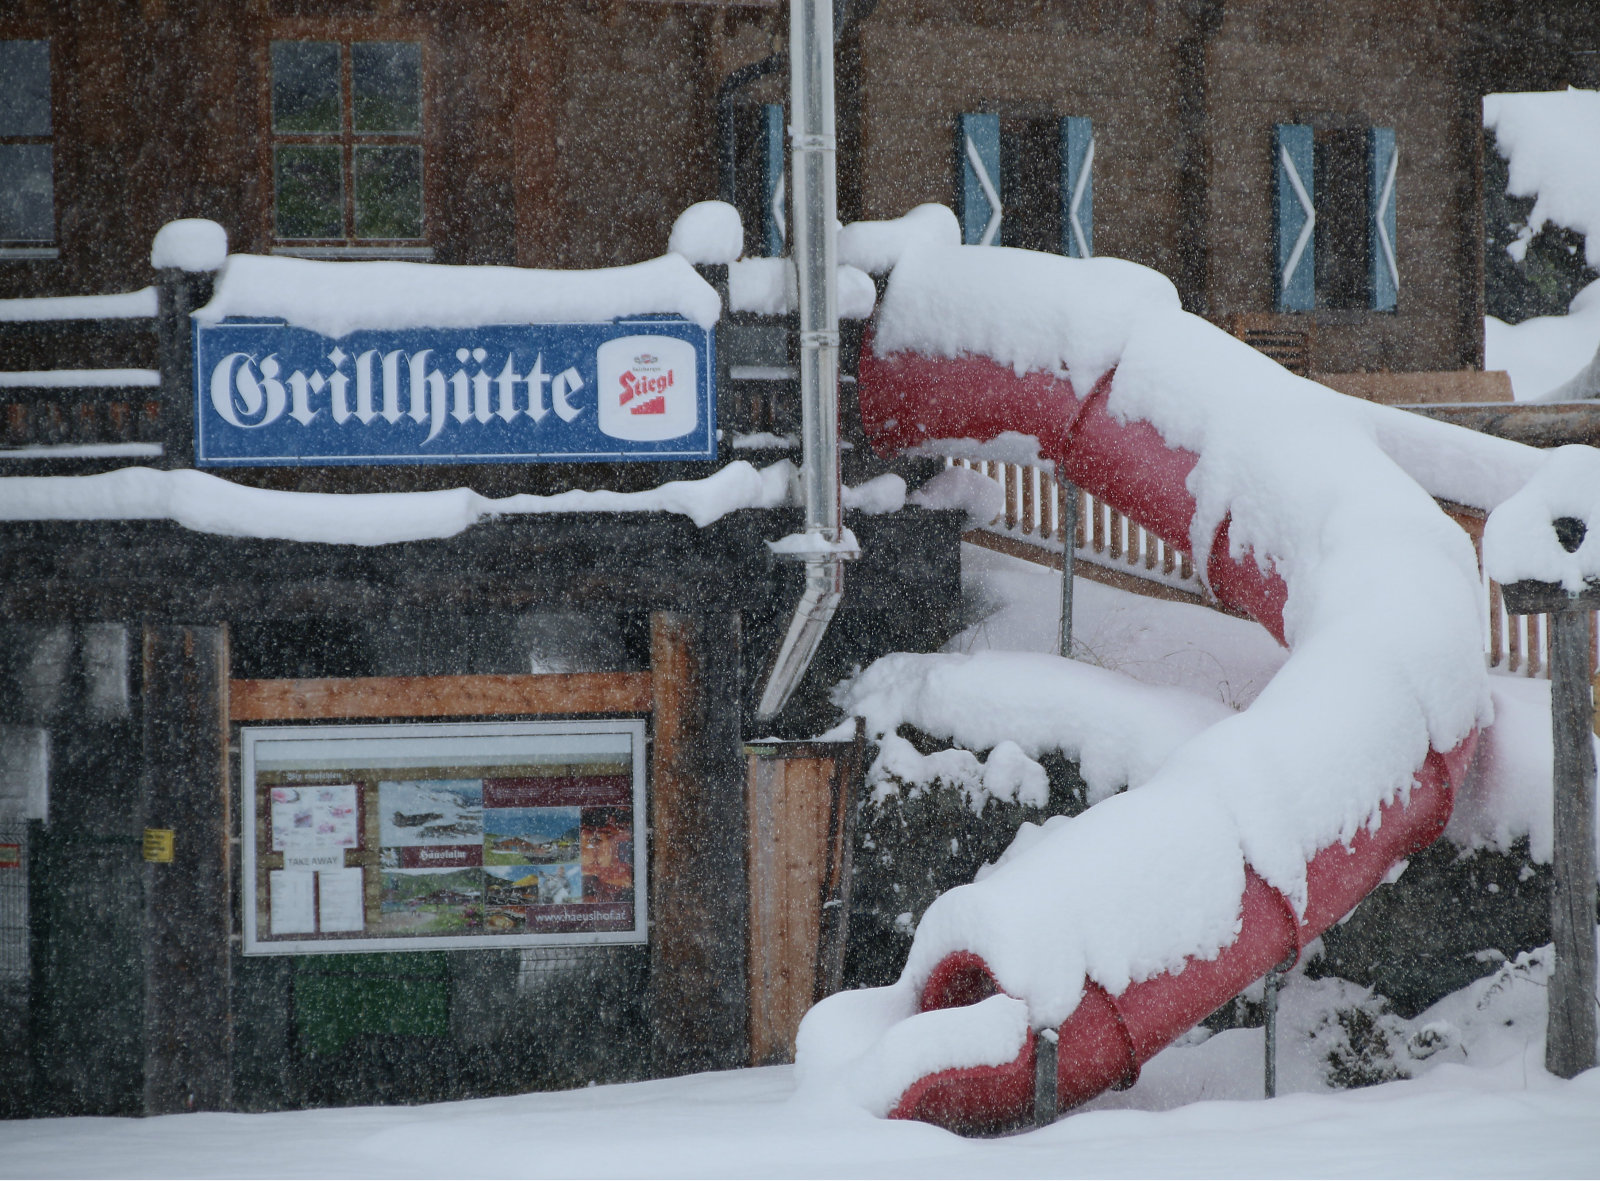 30-50 cm friss hó Kaprunban - Fotó: Stánicz Balázs